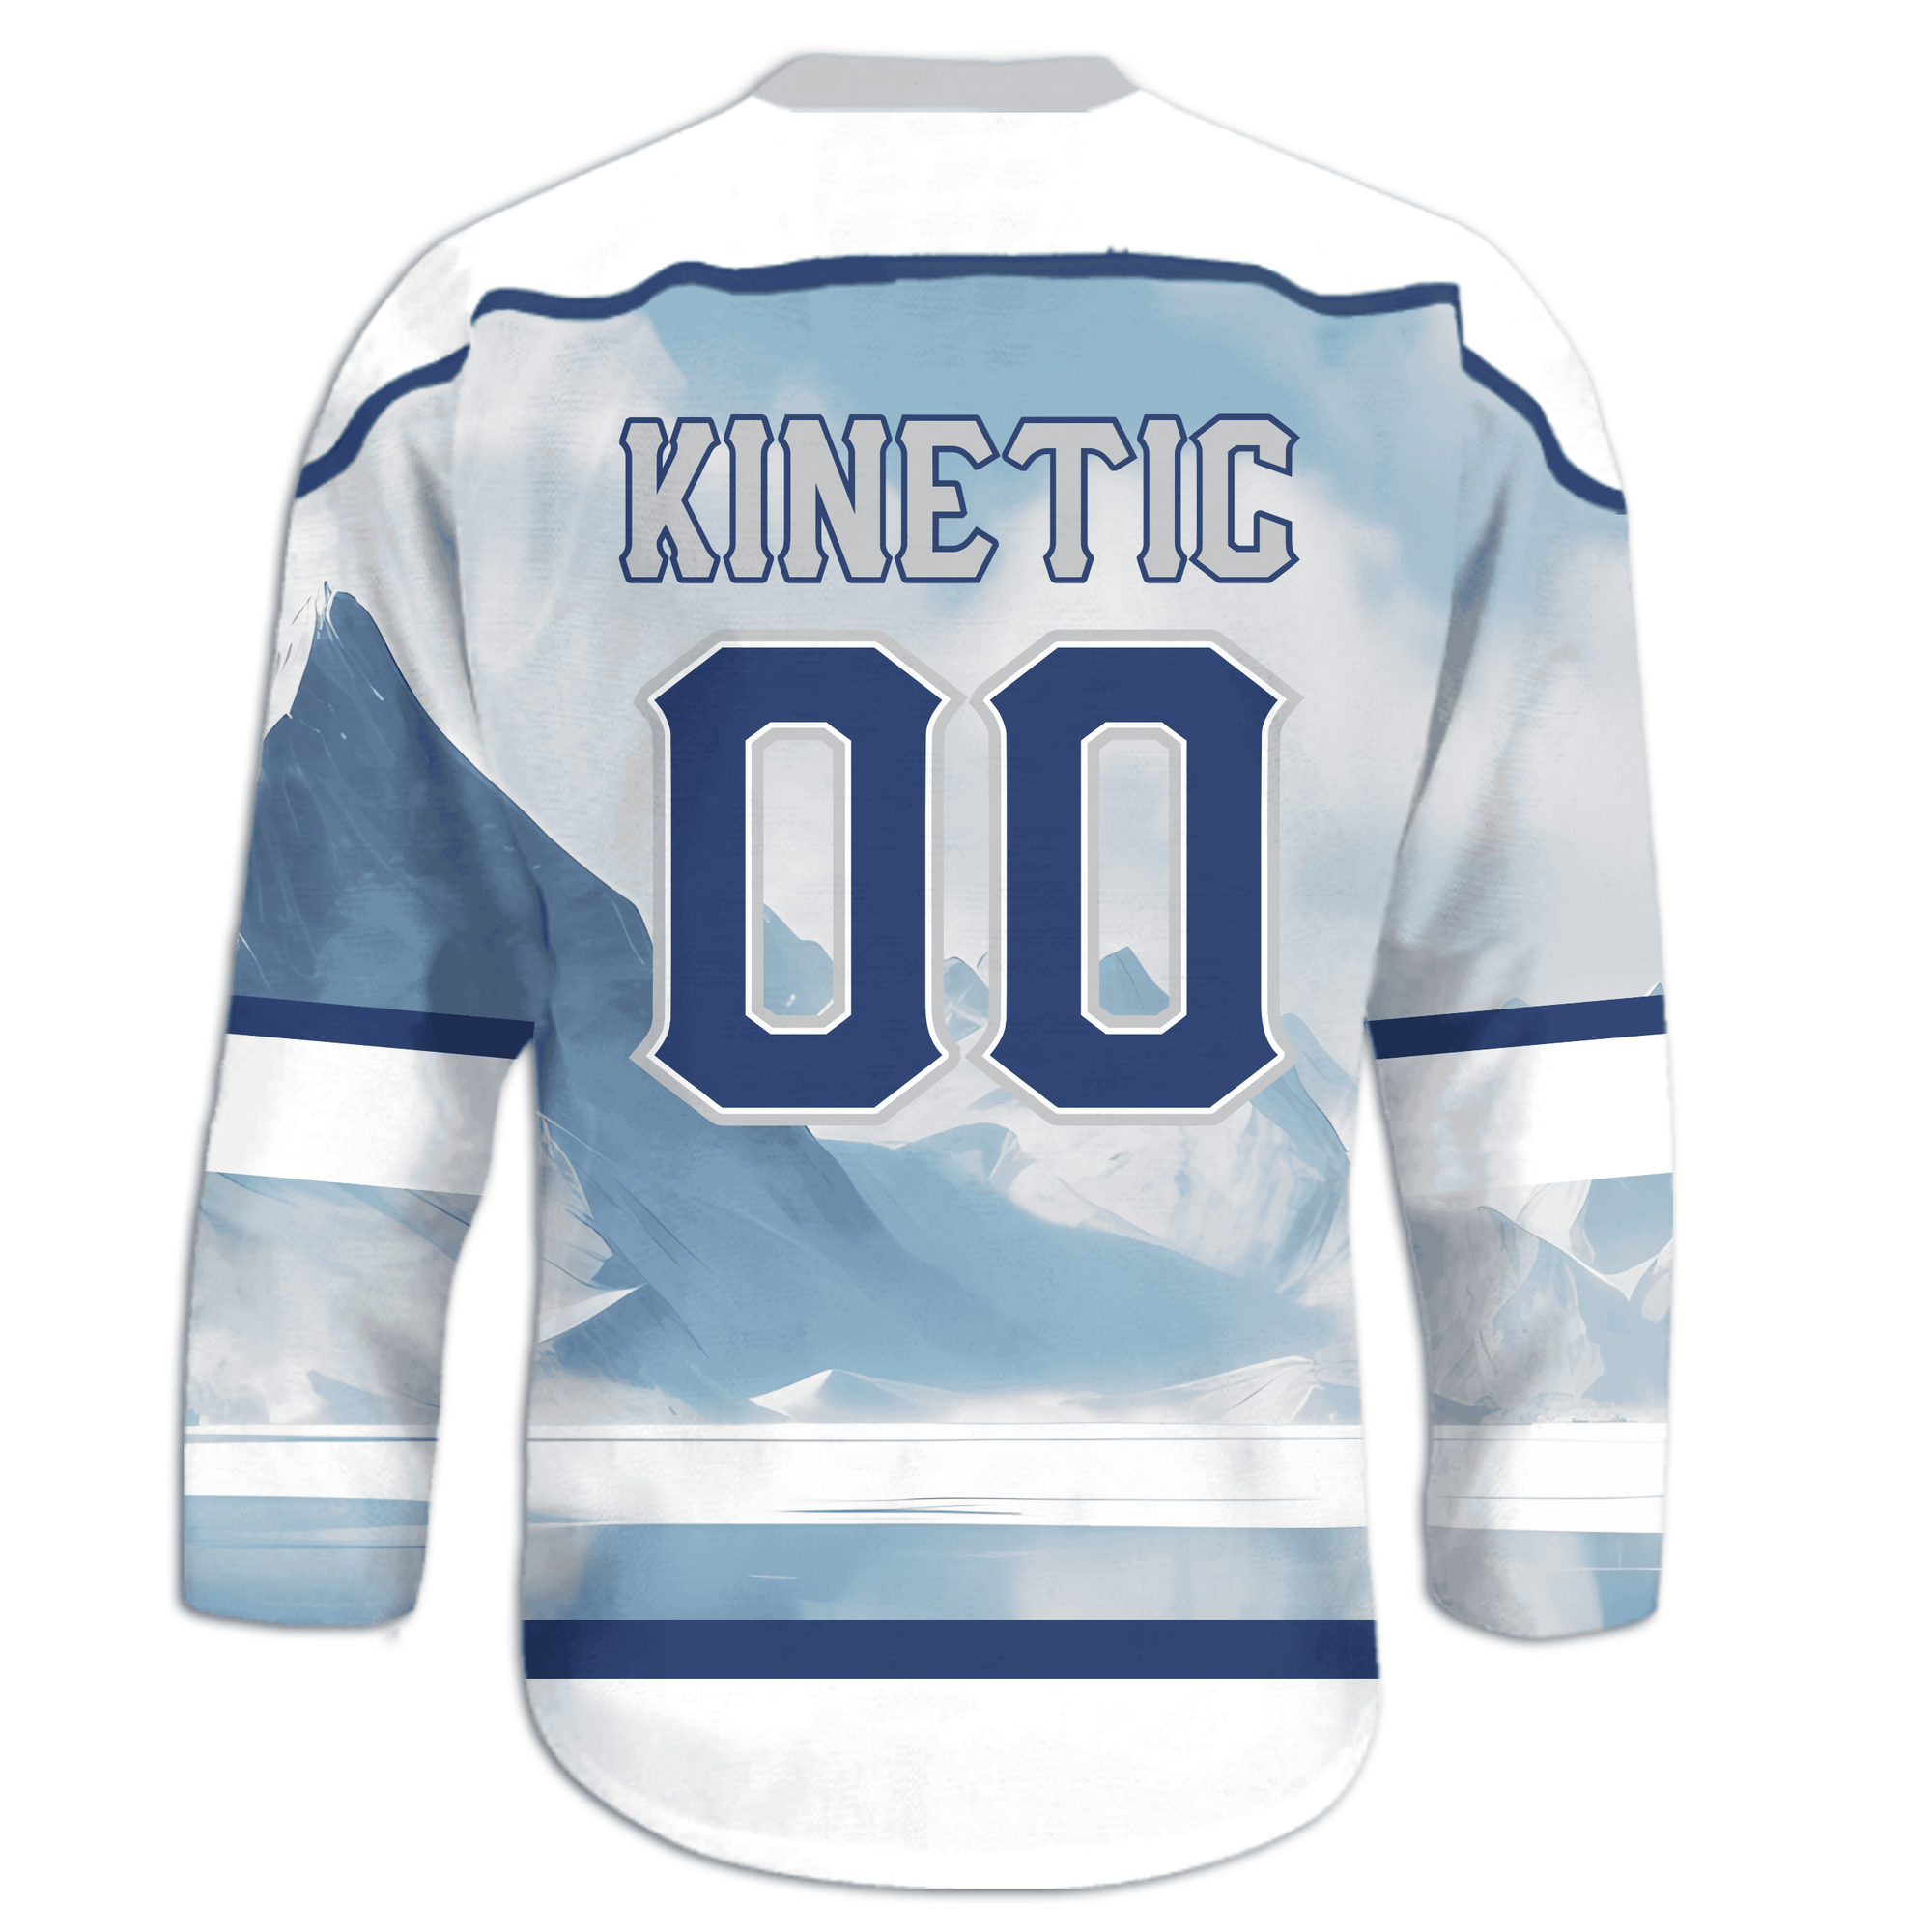 Kappa Kappa Gamma - Avalanche Hockey Jersey